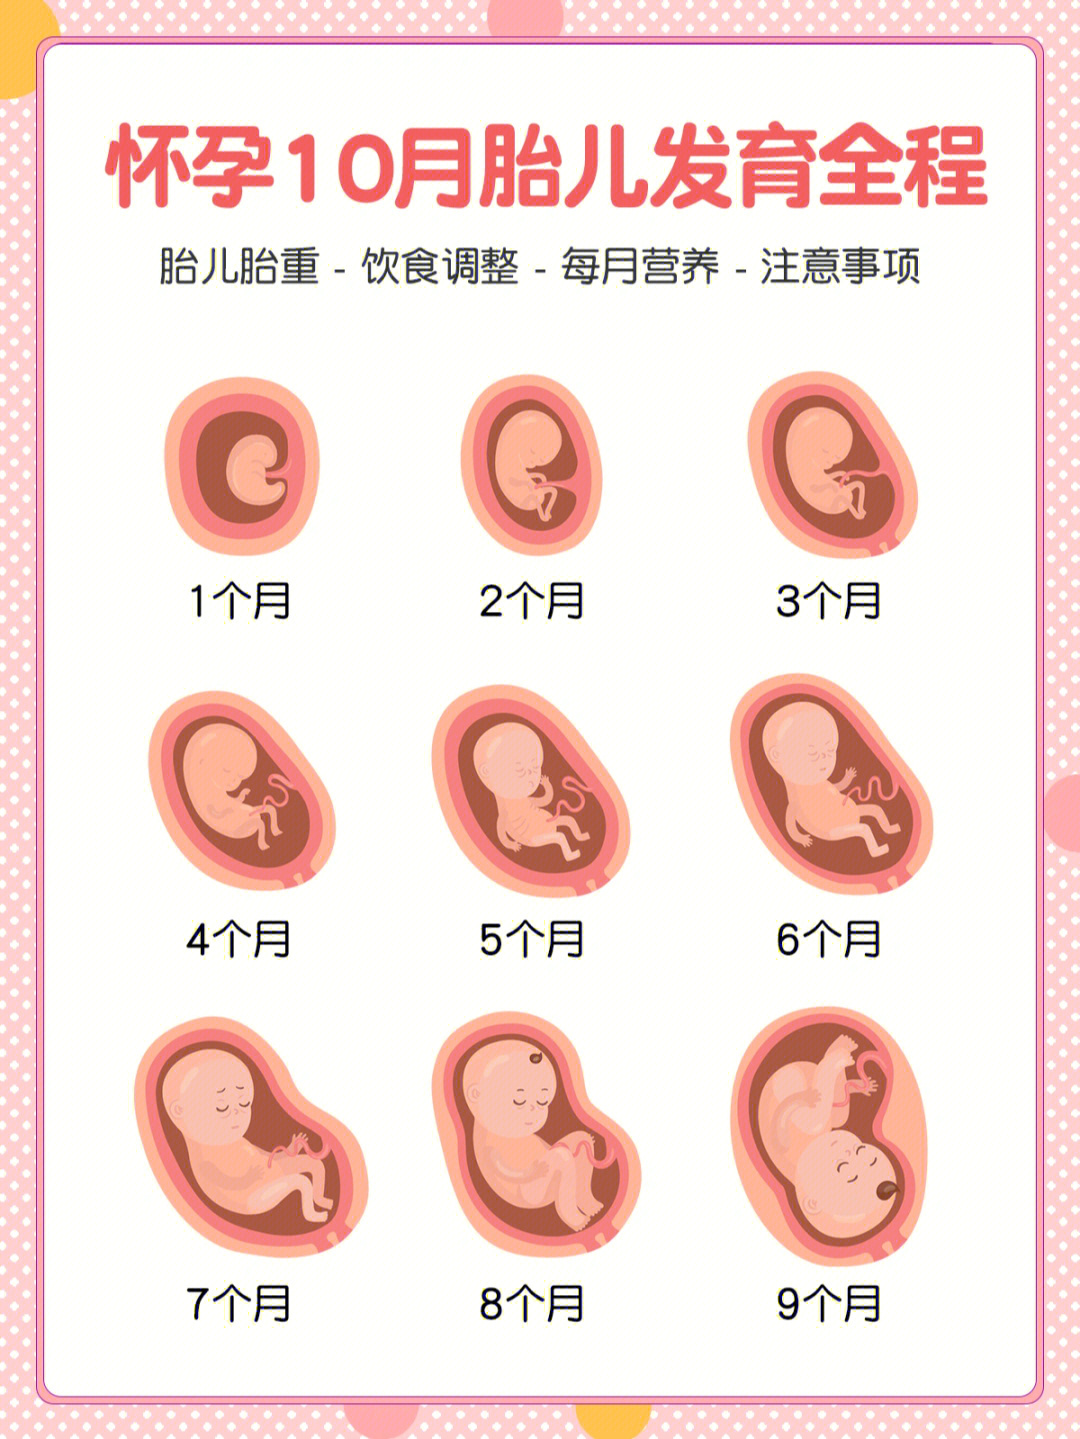 其实,胎儿从受精卵开始,经过逐步发育,再到最后顺利分娩,期间会经历一